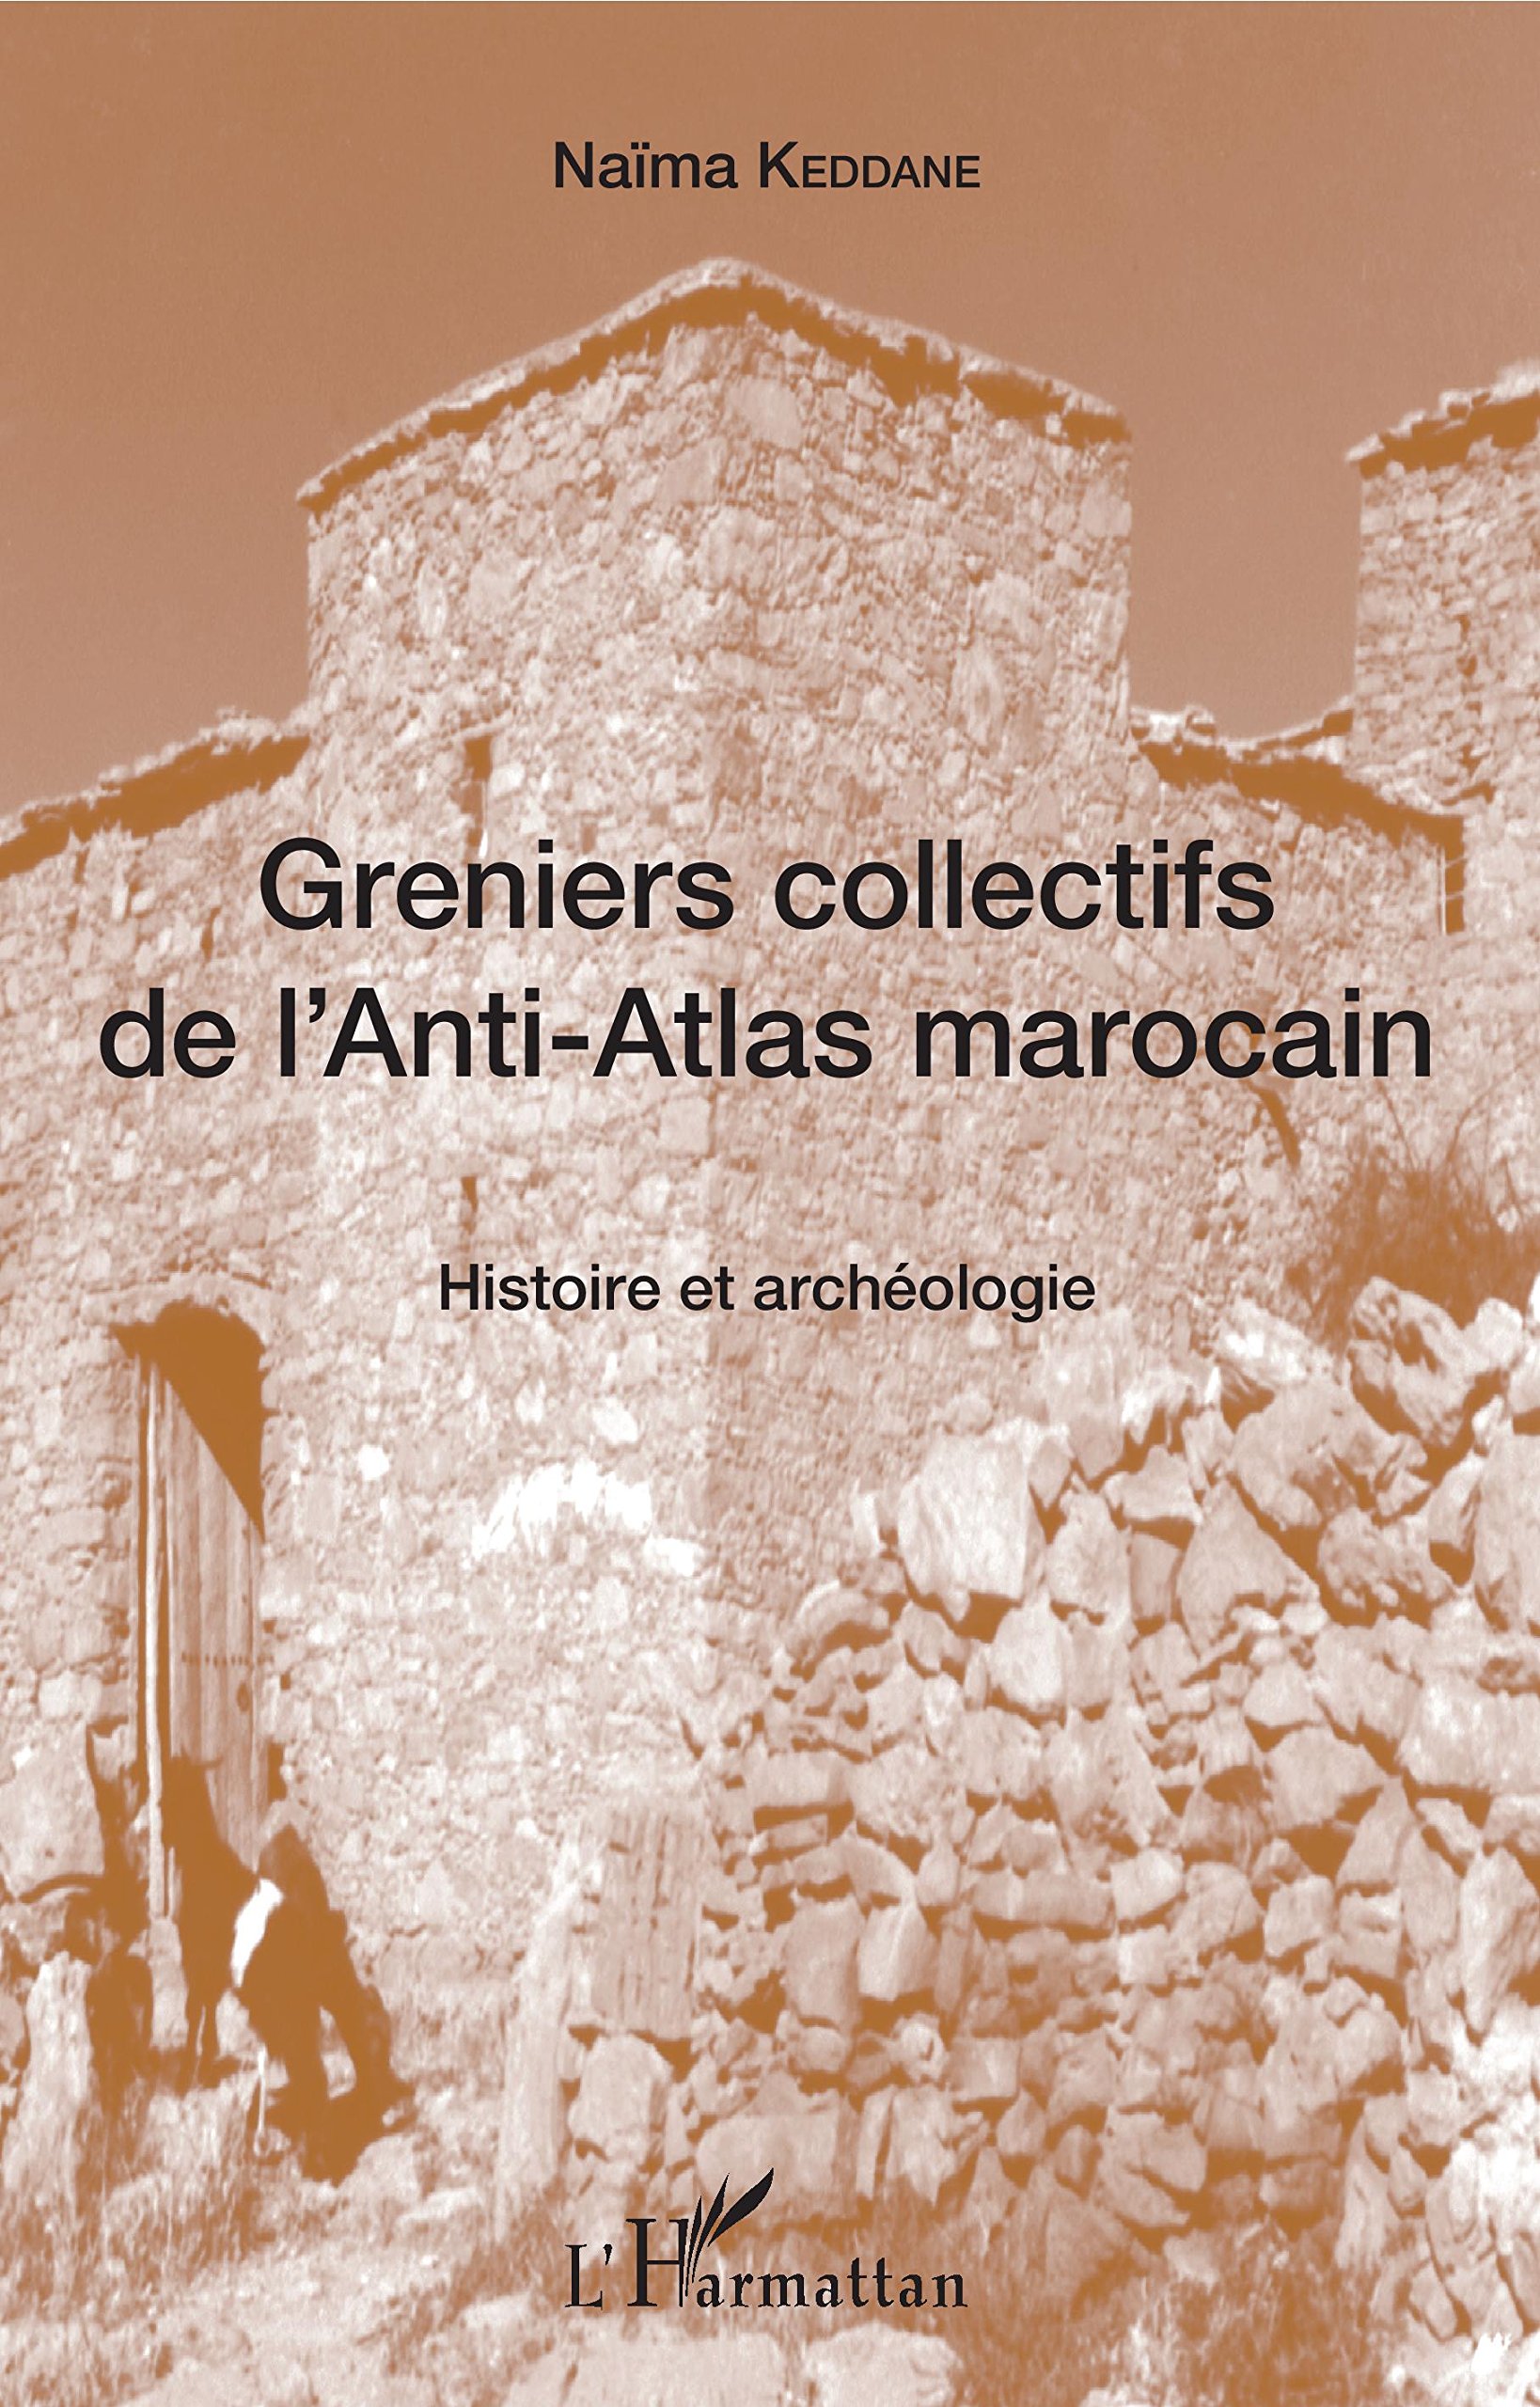 Greniers collectifs de l'Anti-Atlas marocain. Histoire et archéologie, 2018, 182 p.